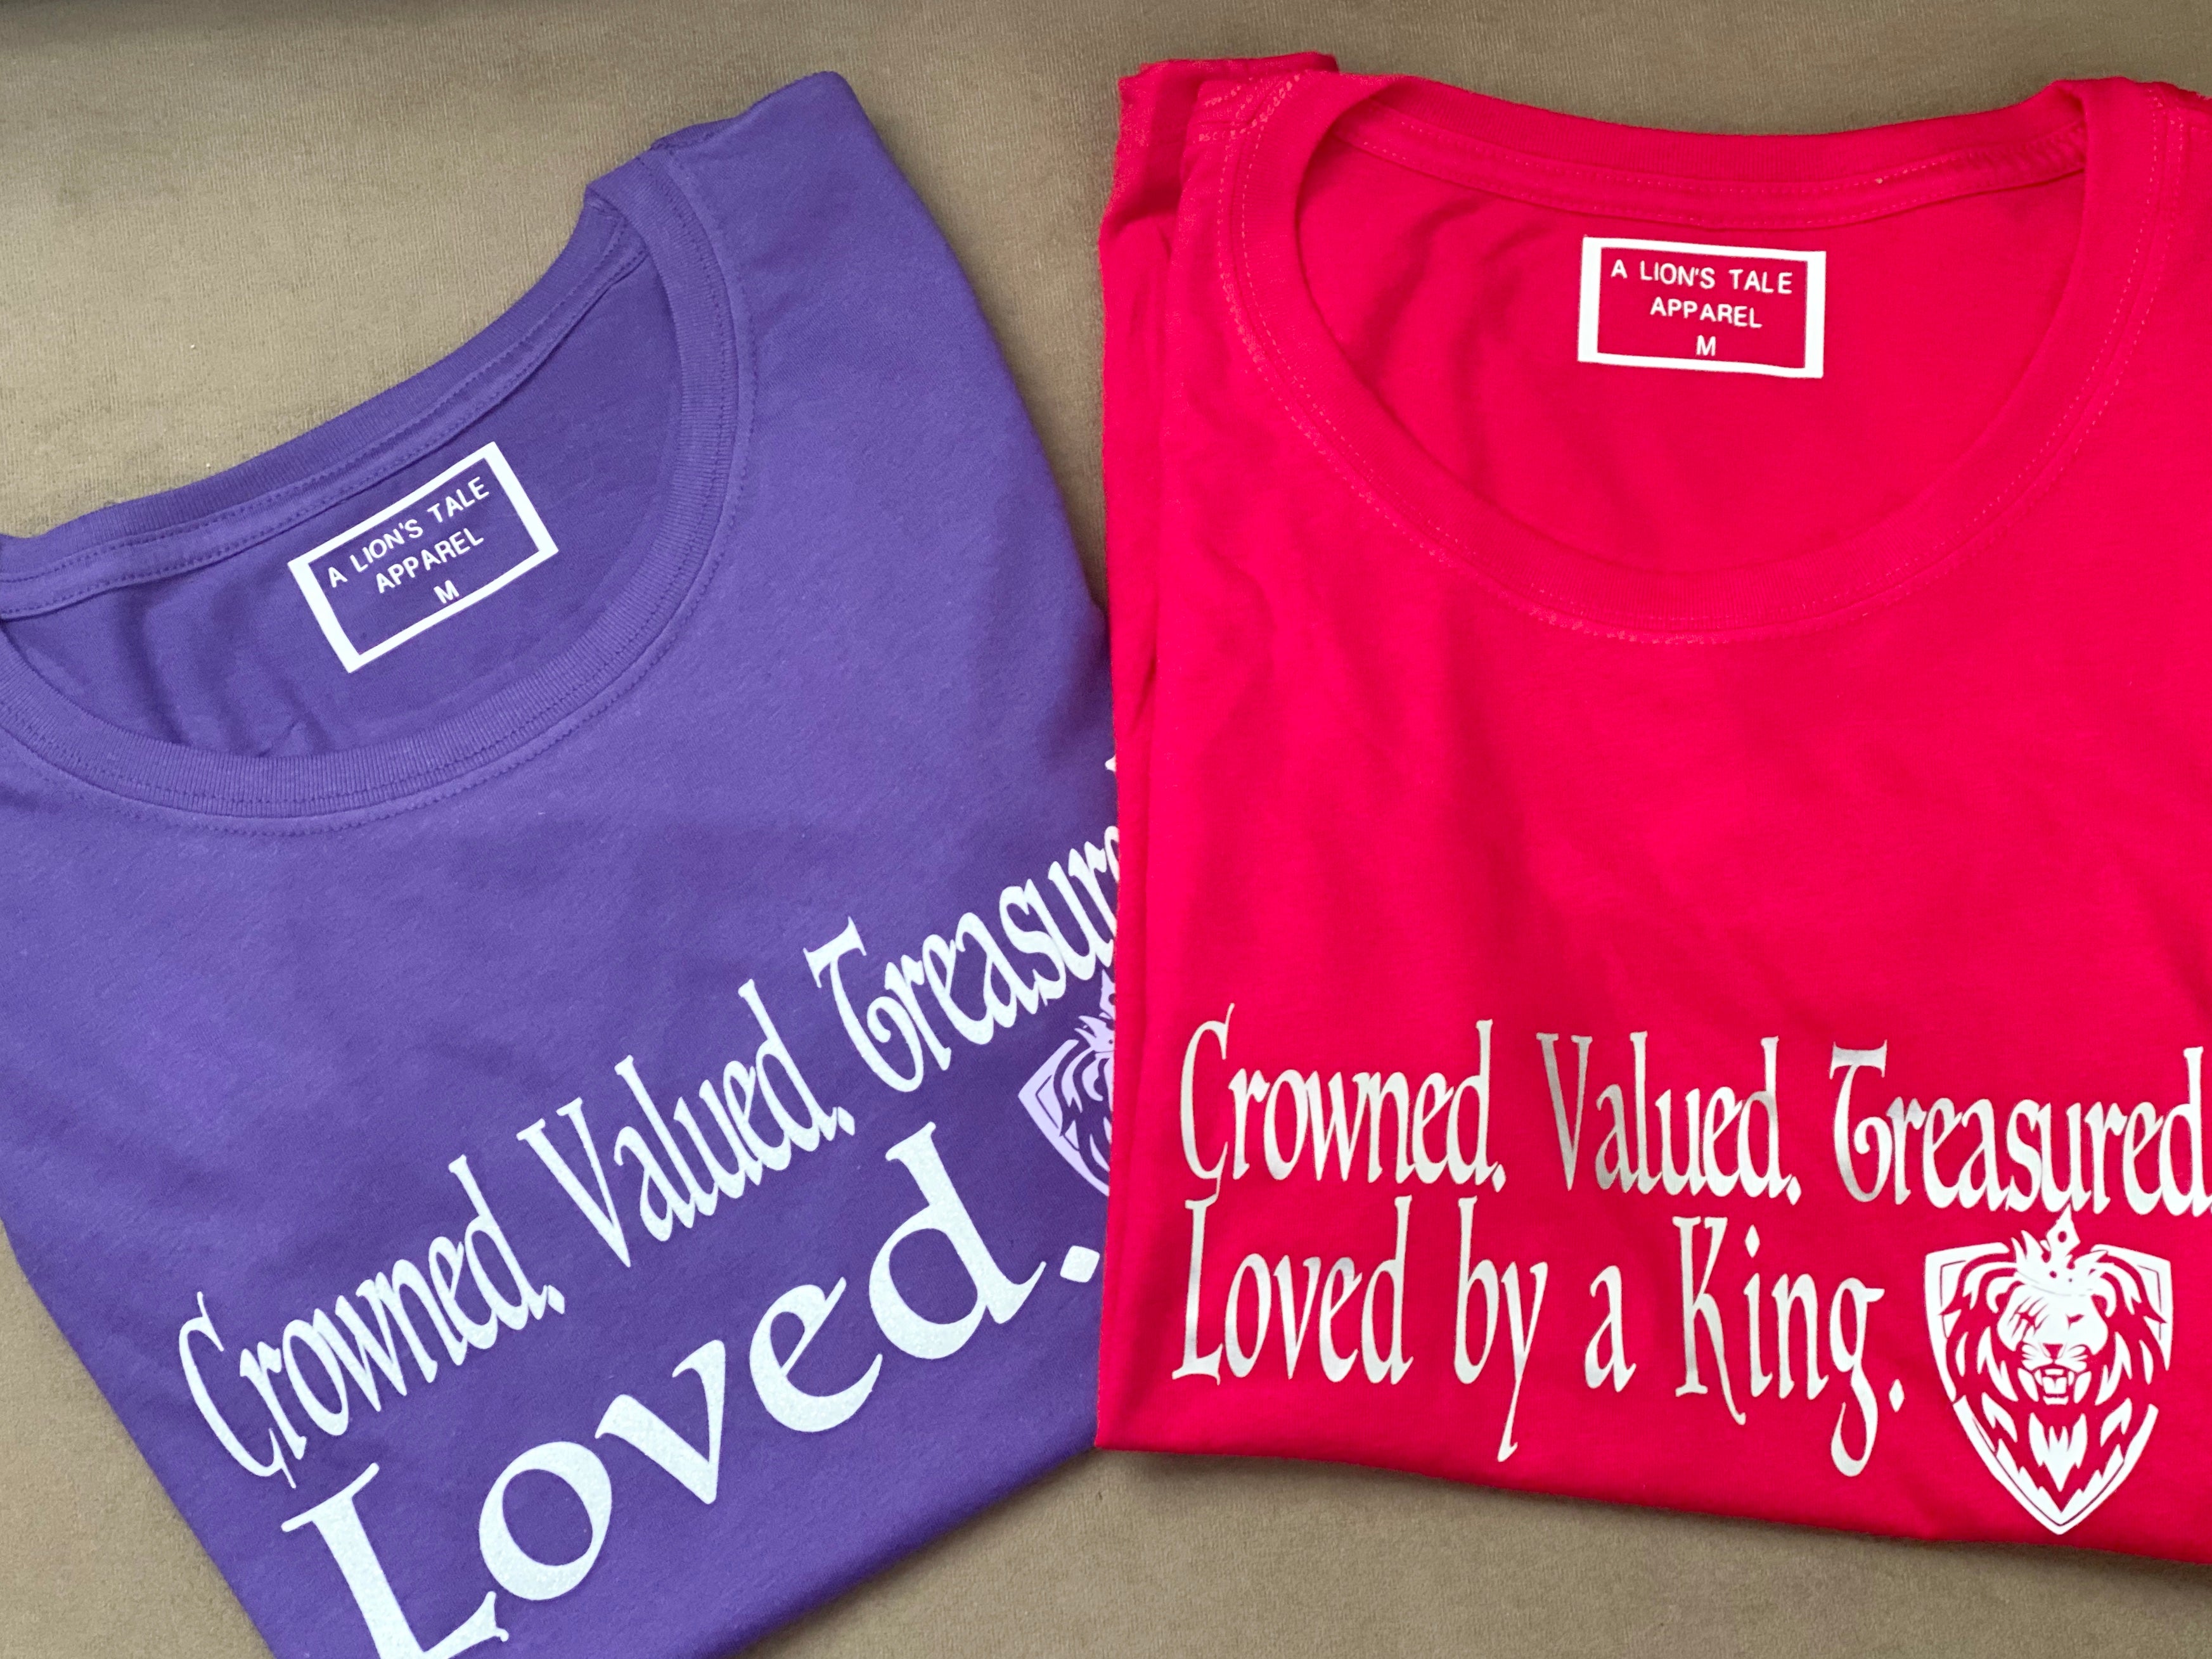 Women's "Crowned. Valued. Treasured. Loved."